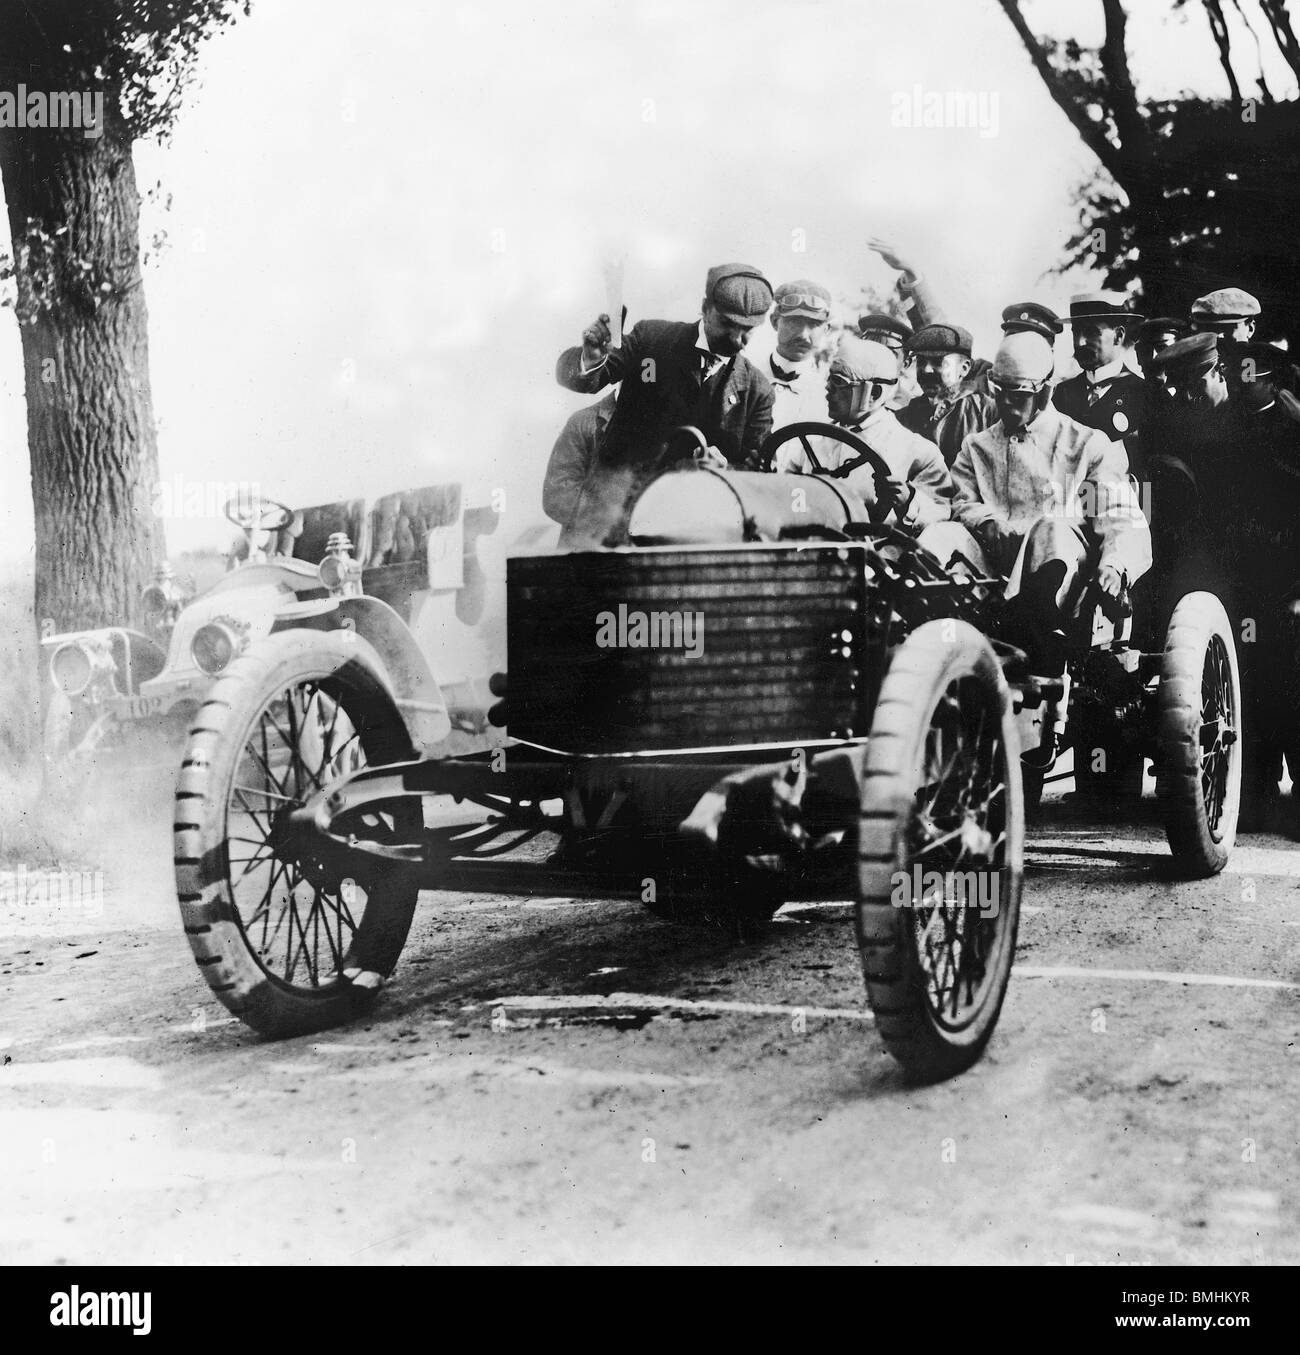 1905 Darracq 200hp V8, Algernon Lee Guinness at start of race Stock Photo